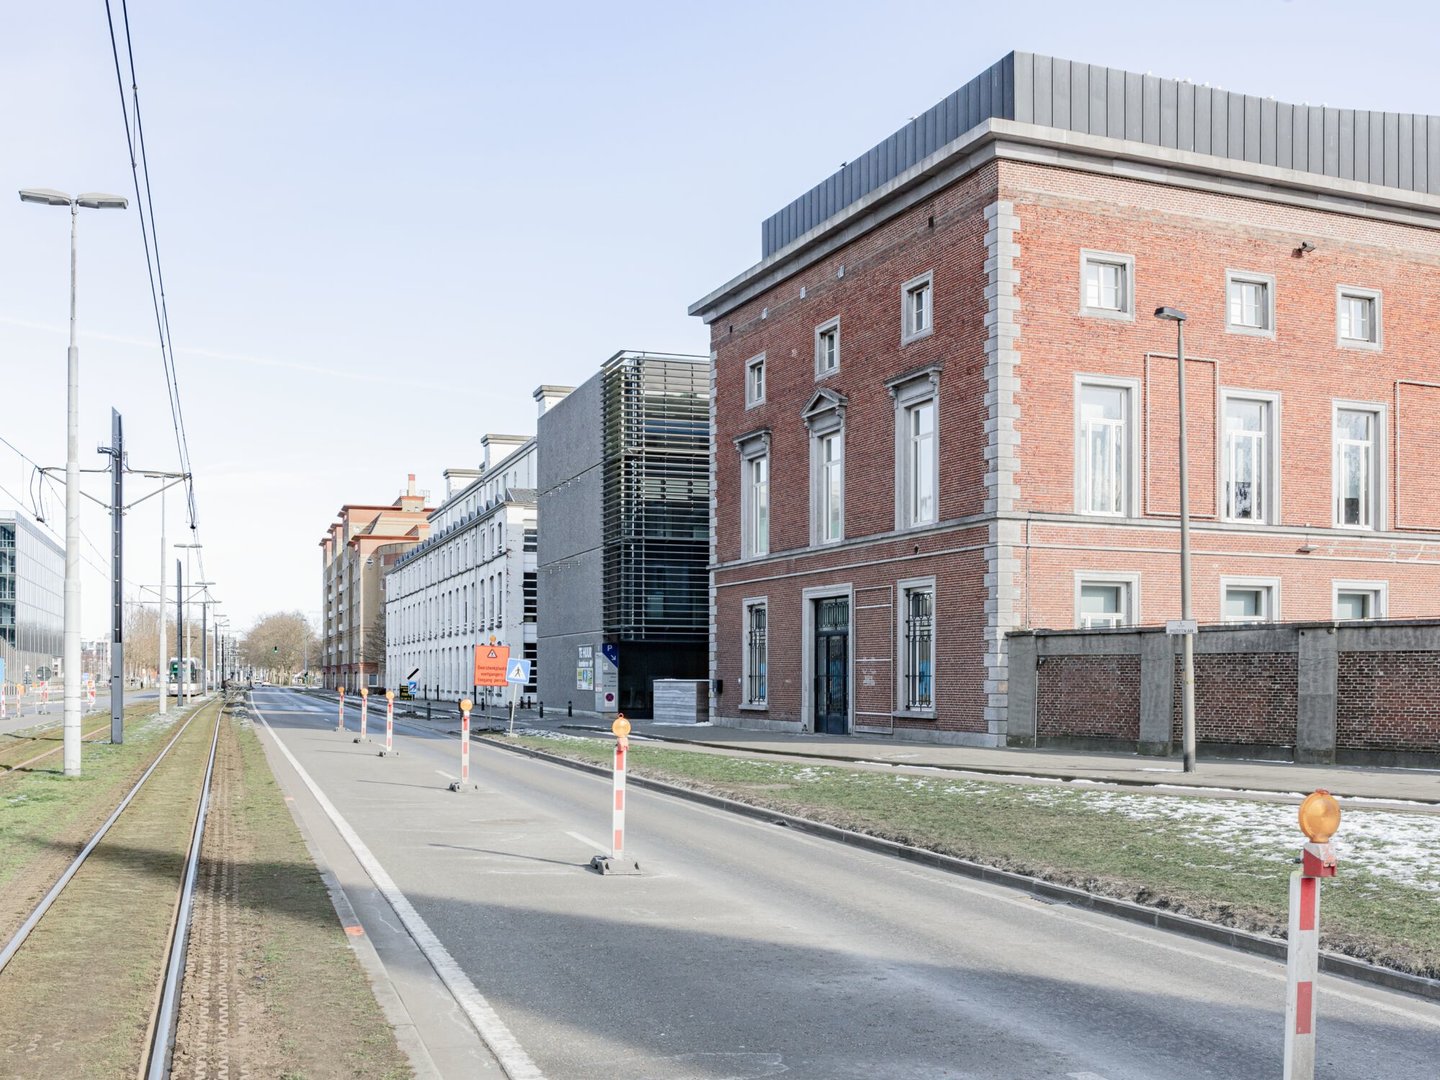 Buitenzicht van voormalige directeurswoning textielfabriek UCO de Hemptinne in Gent